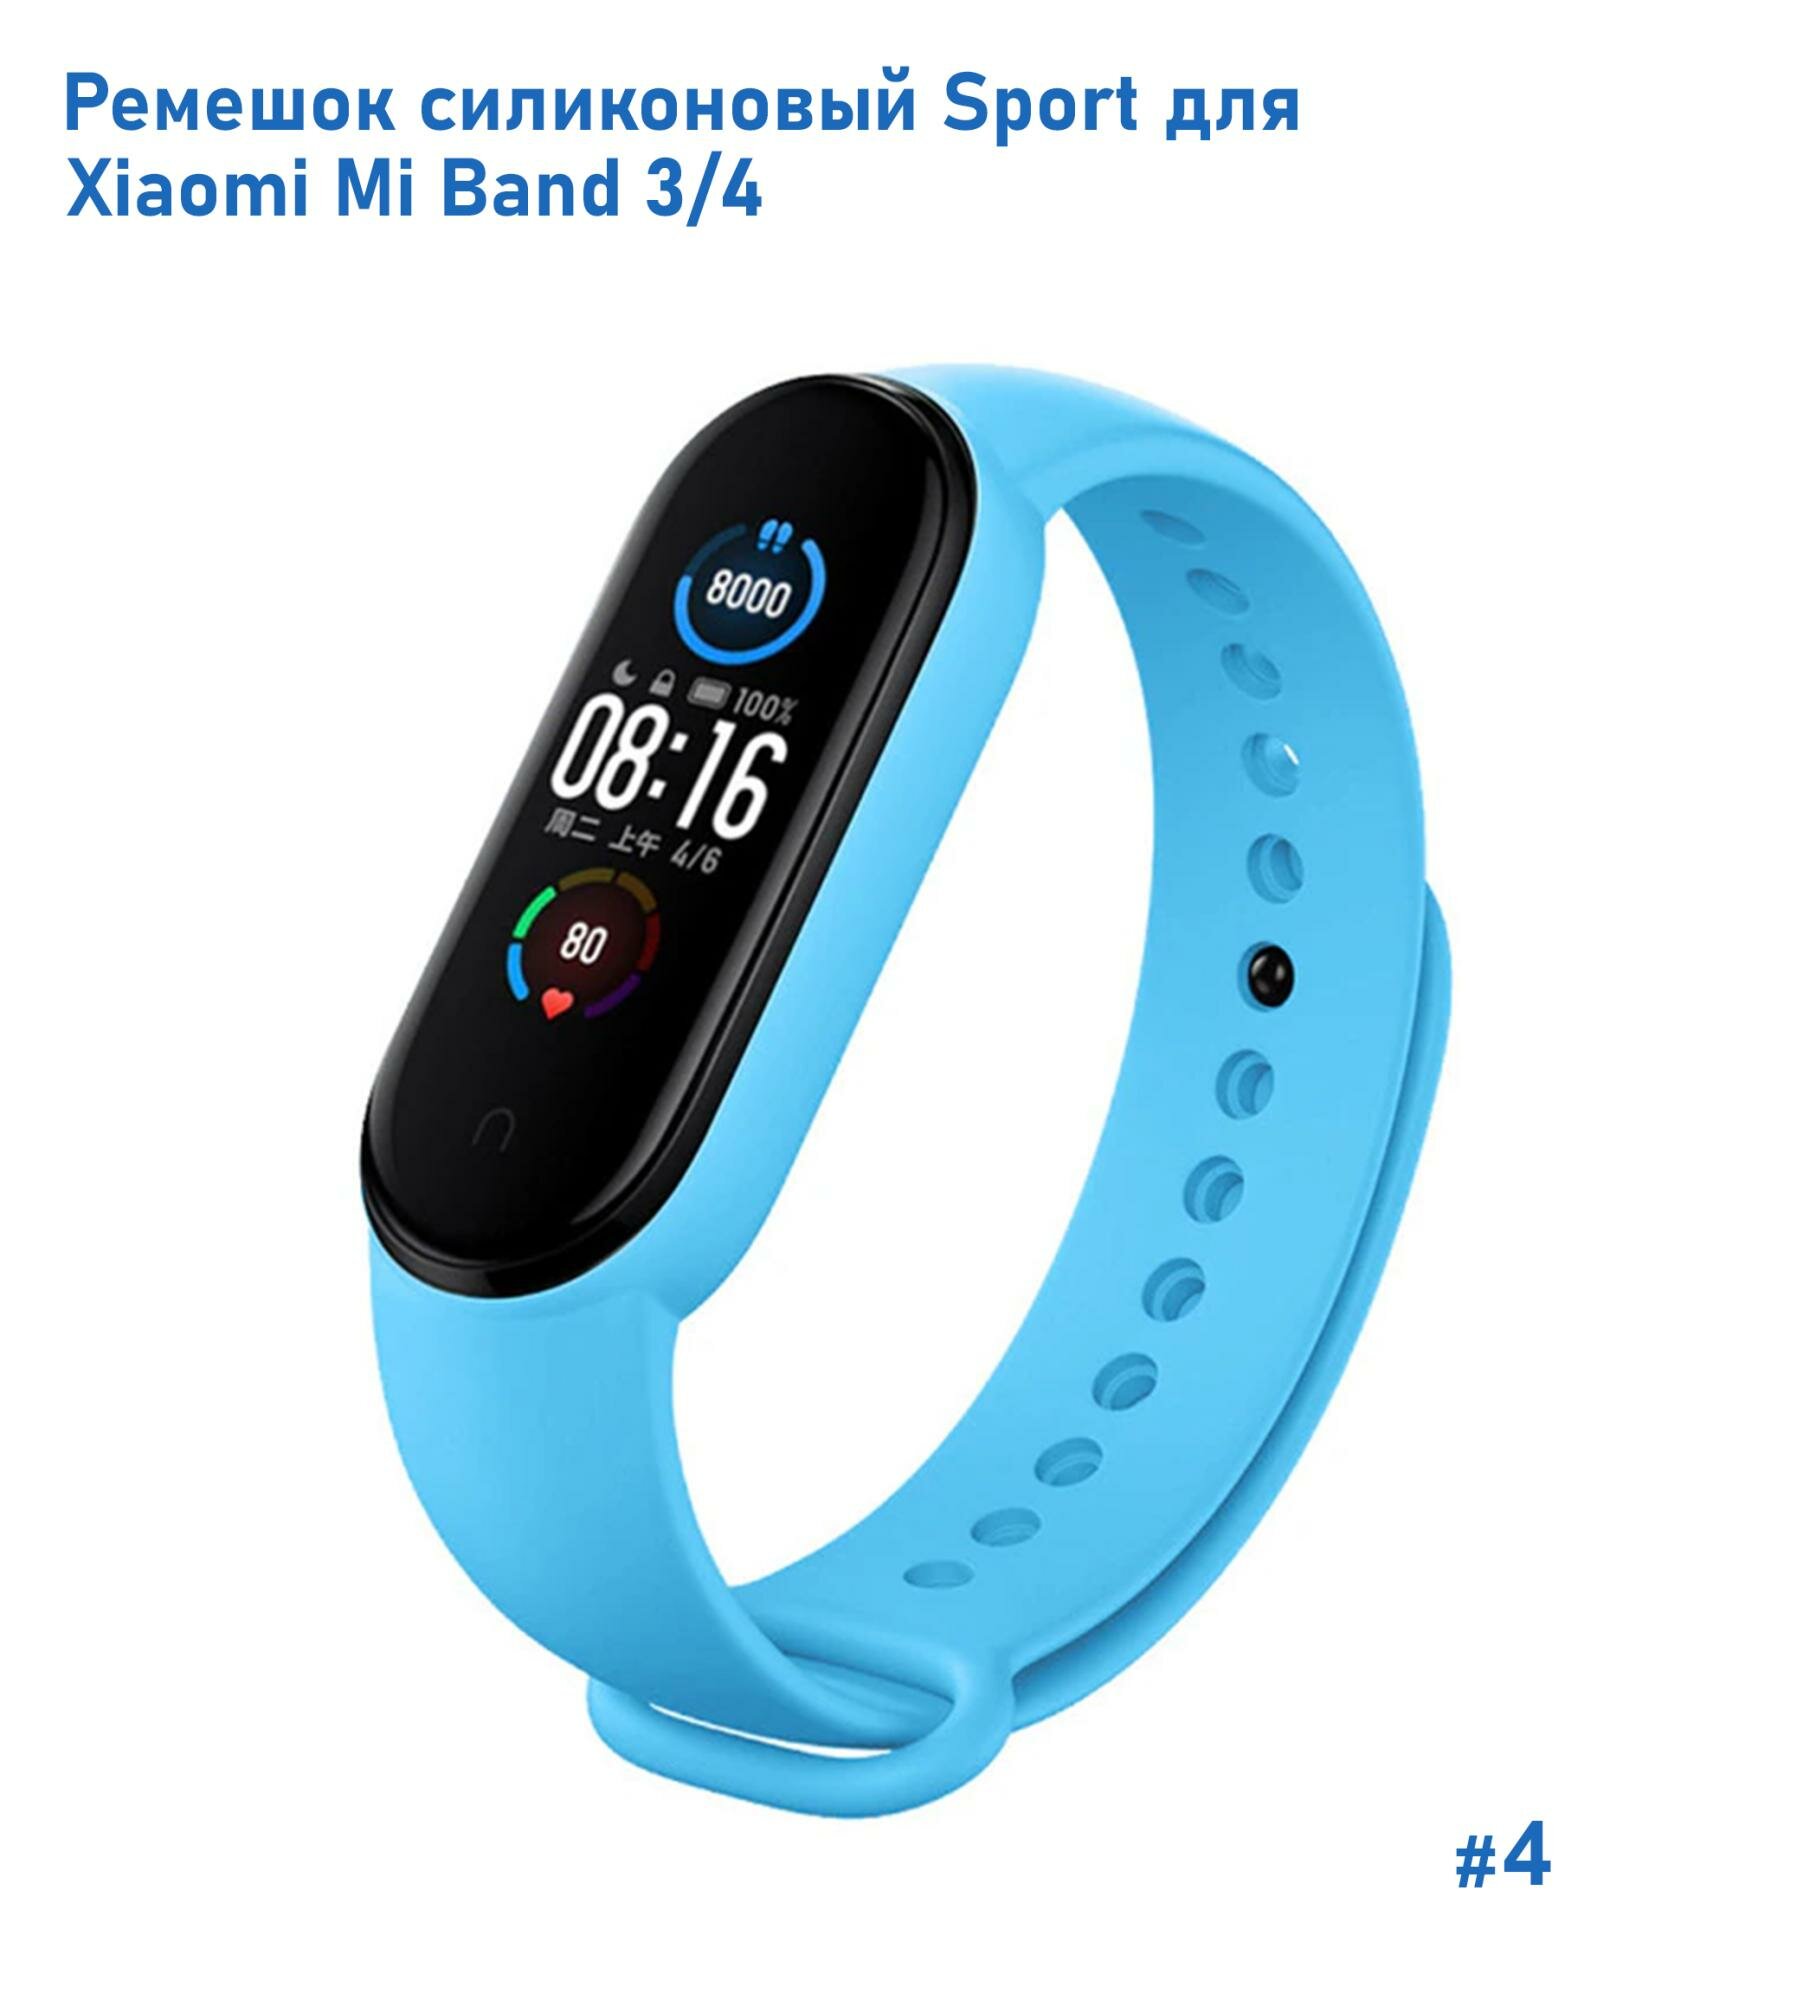 Ремешок силиконовый Sport для Xiaomi Mi Band 3/4, на кнопке, голубой (4)